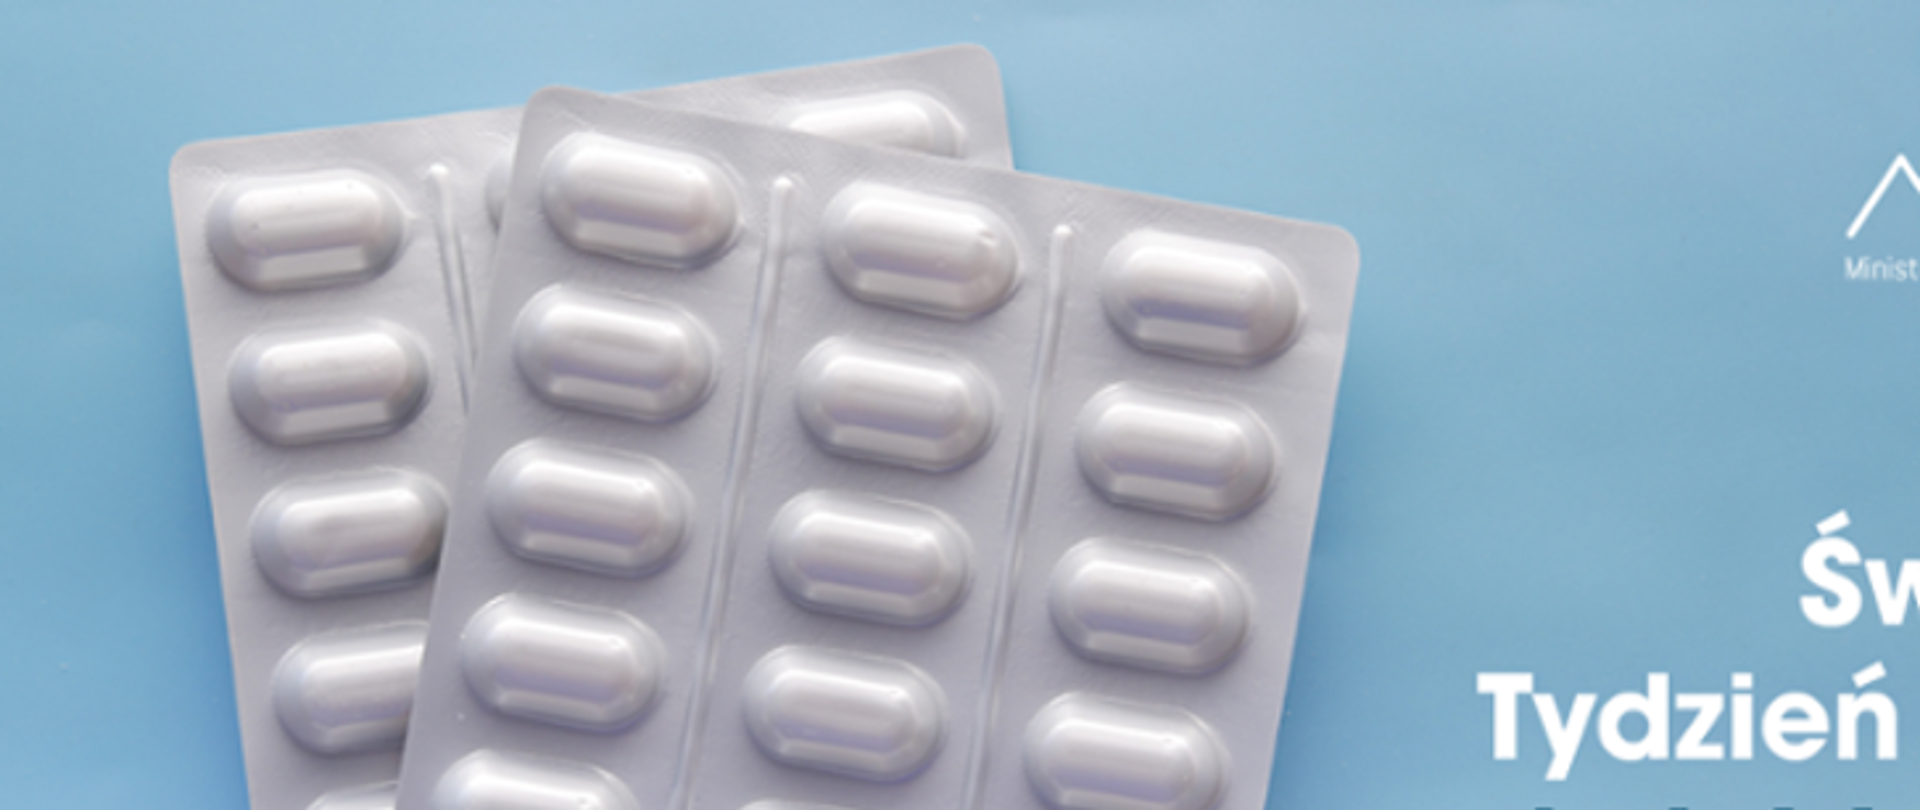 Na zdjęciu po lewej stronie znajduje się antybiotyk w postaci tabletek. Po prawej stronie widnieje logo Ministerstwa Zdrowia oraz Państwowej Inspekcji Sanitarnej. Poniżej widnieje napis Światowy Tydzień Wiedzy o Antybiotykach. Tło jest w odcieniu niebieskiego.